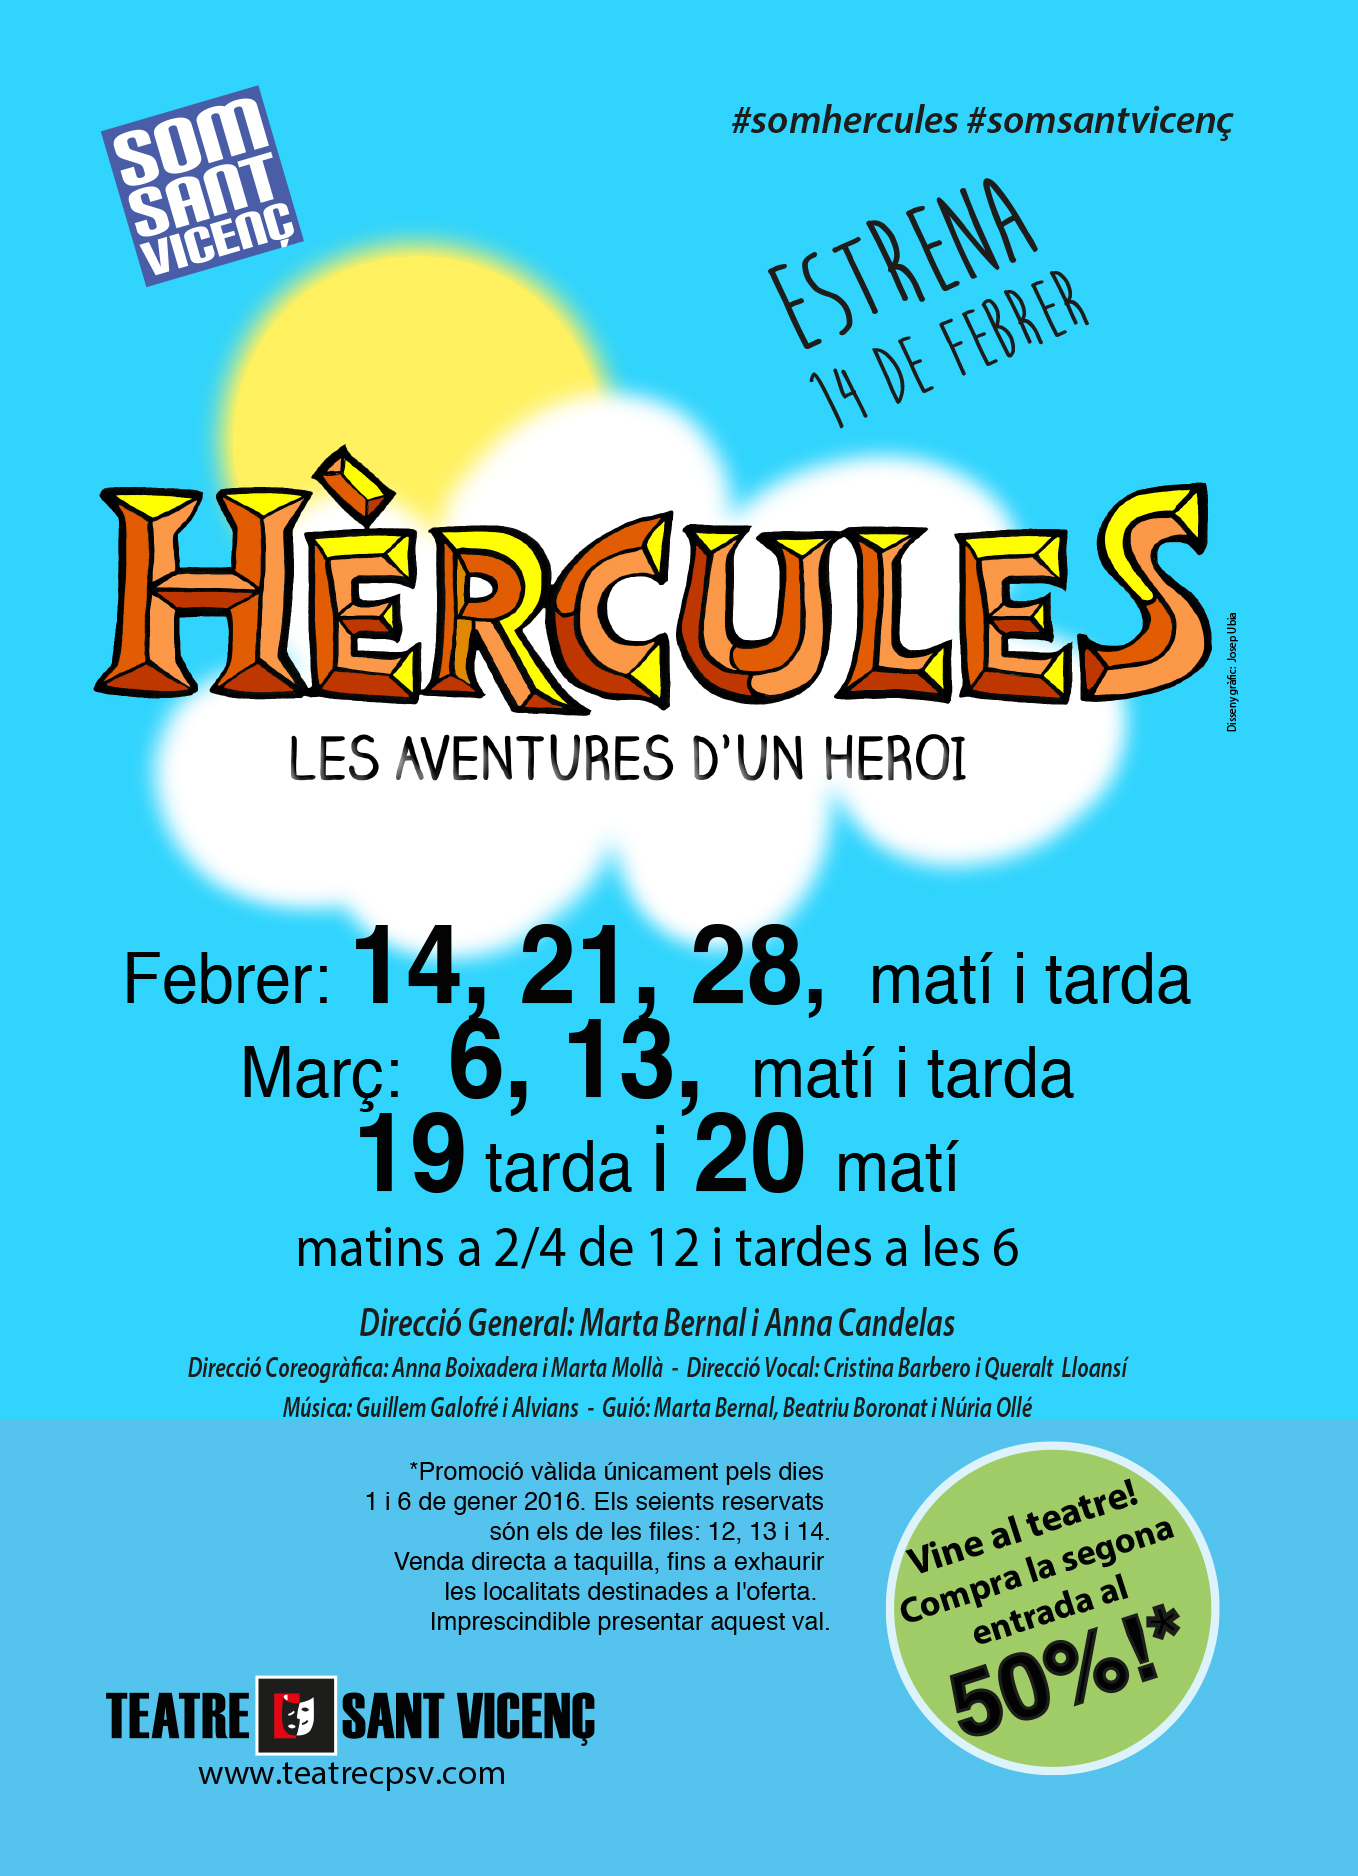 Hèrcules per tot Sabadell!